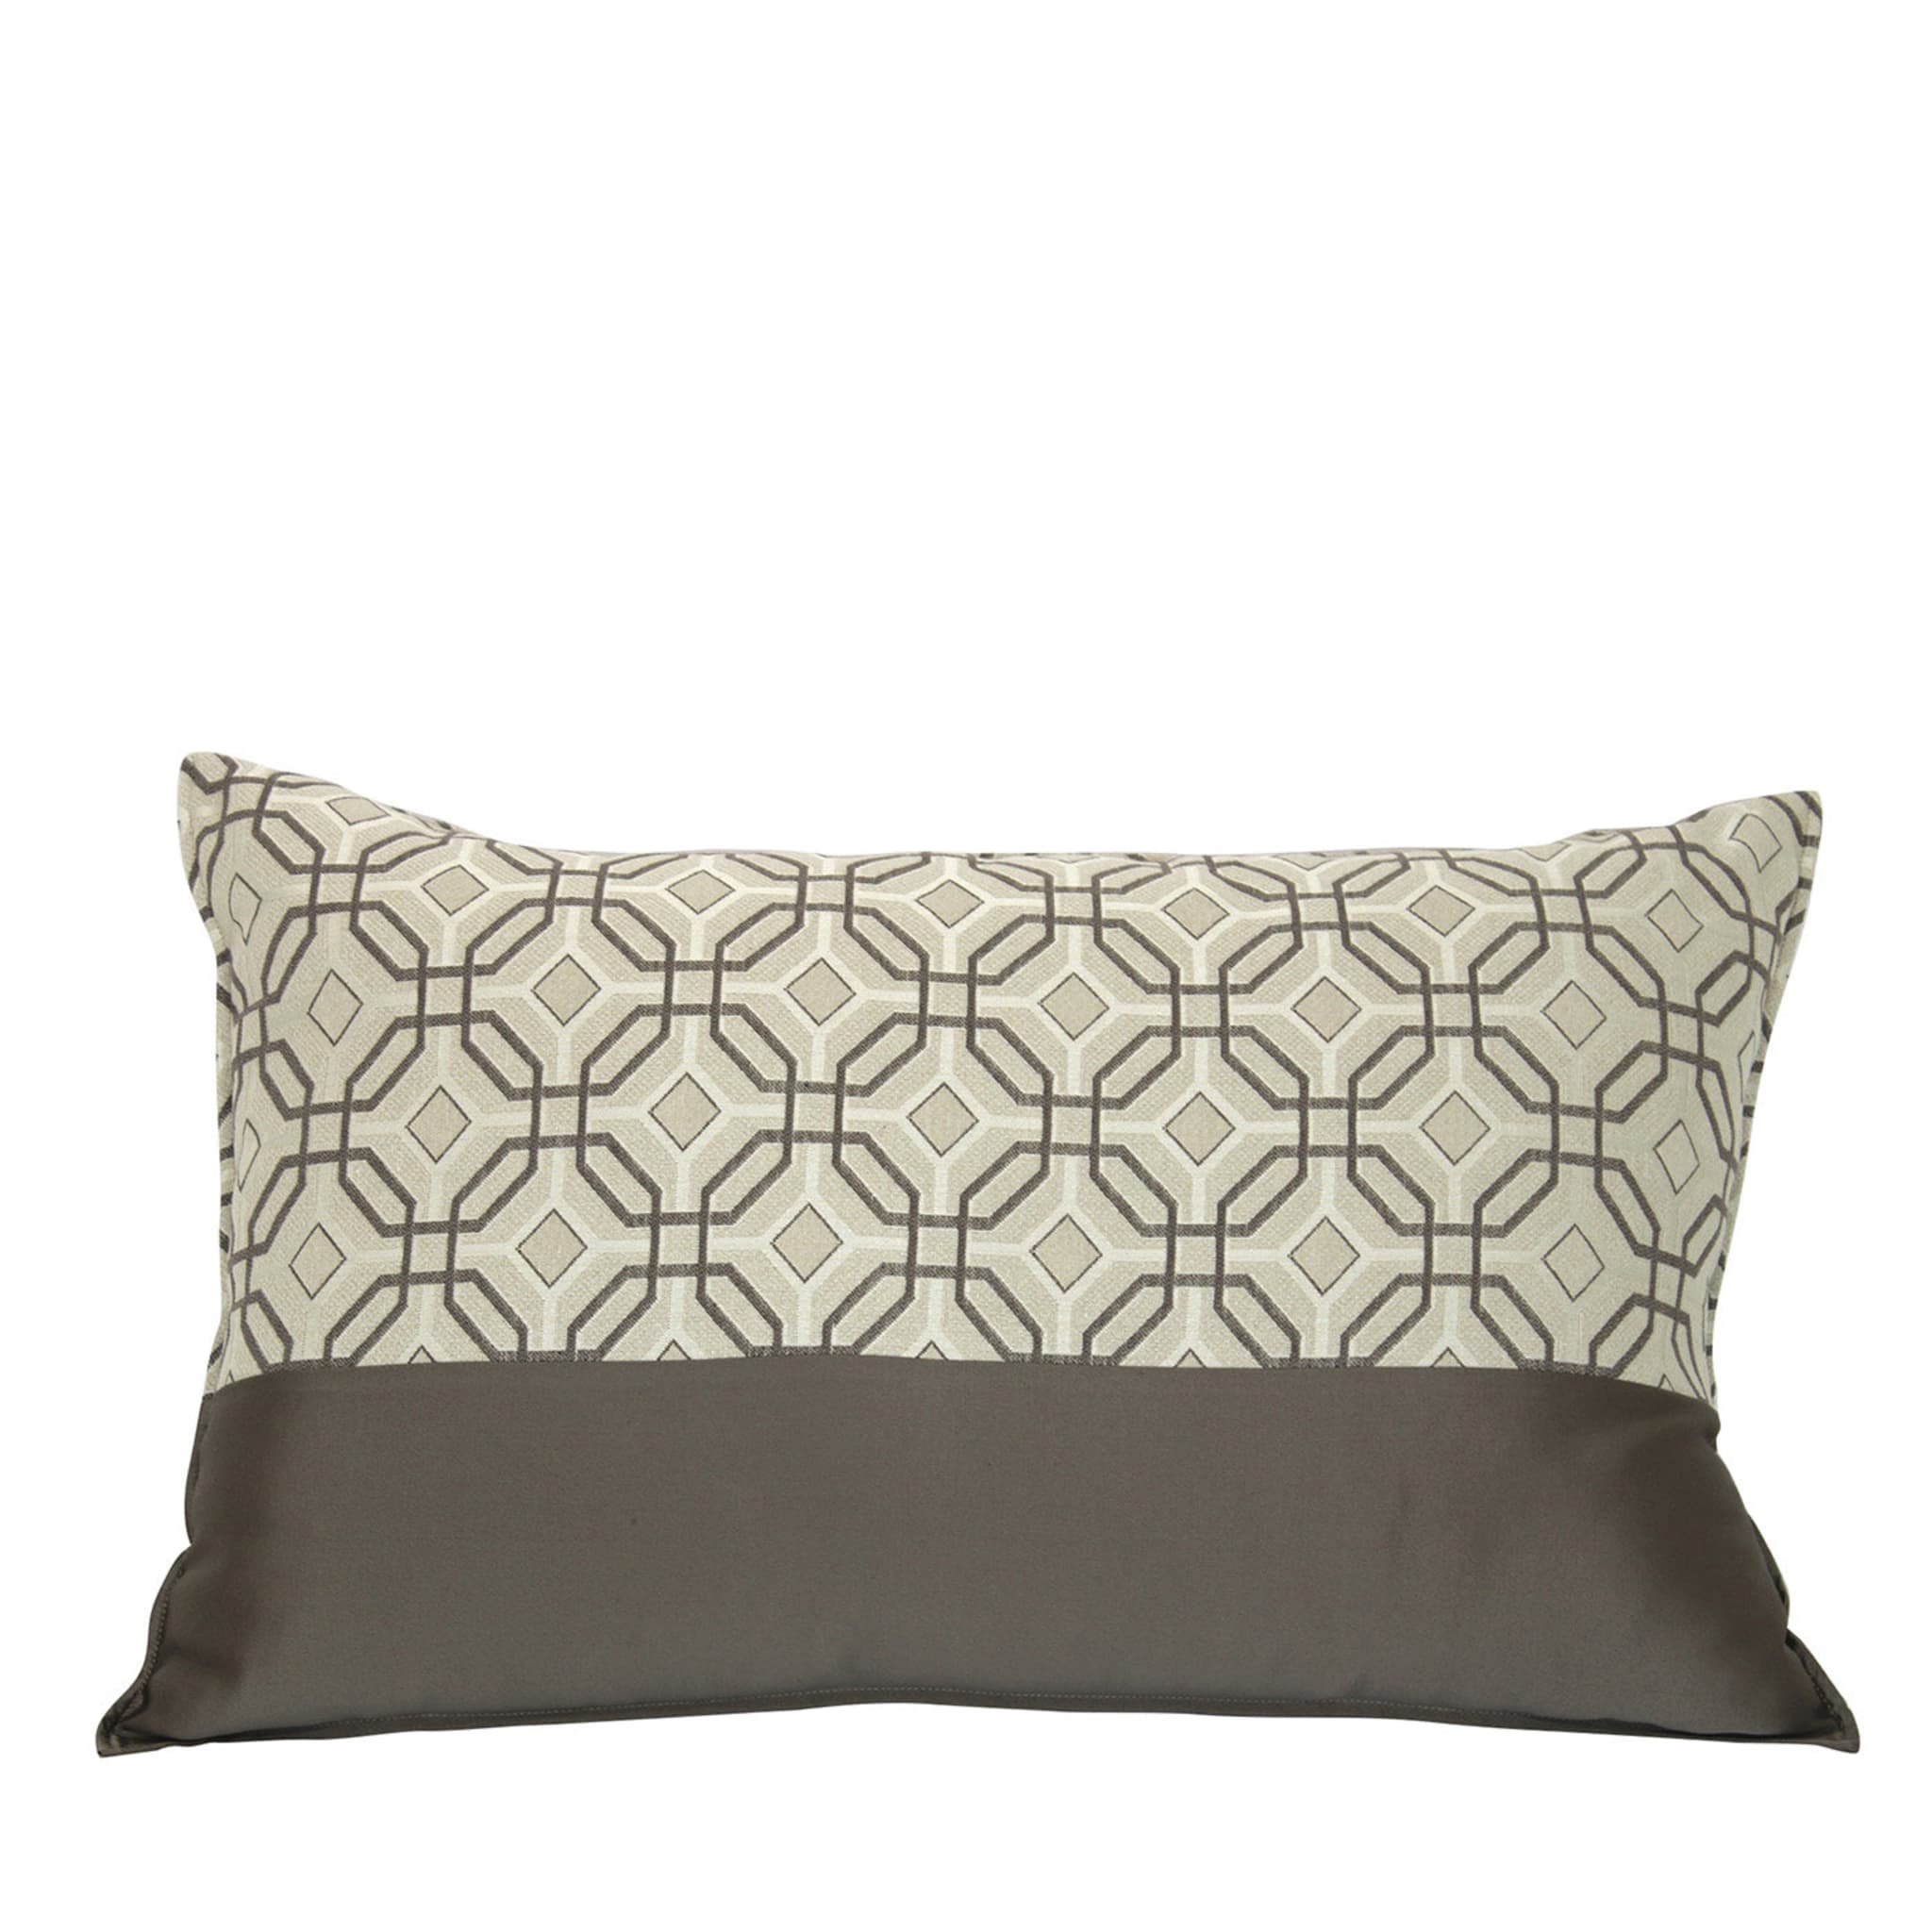 Sorrento Set of 2 Pillows - Main view